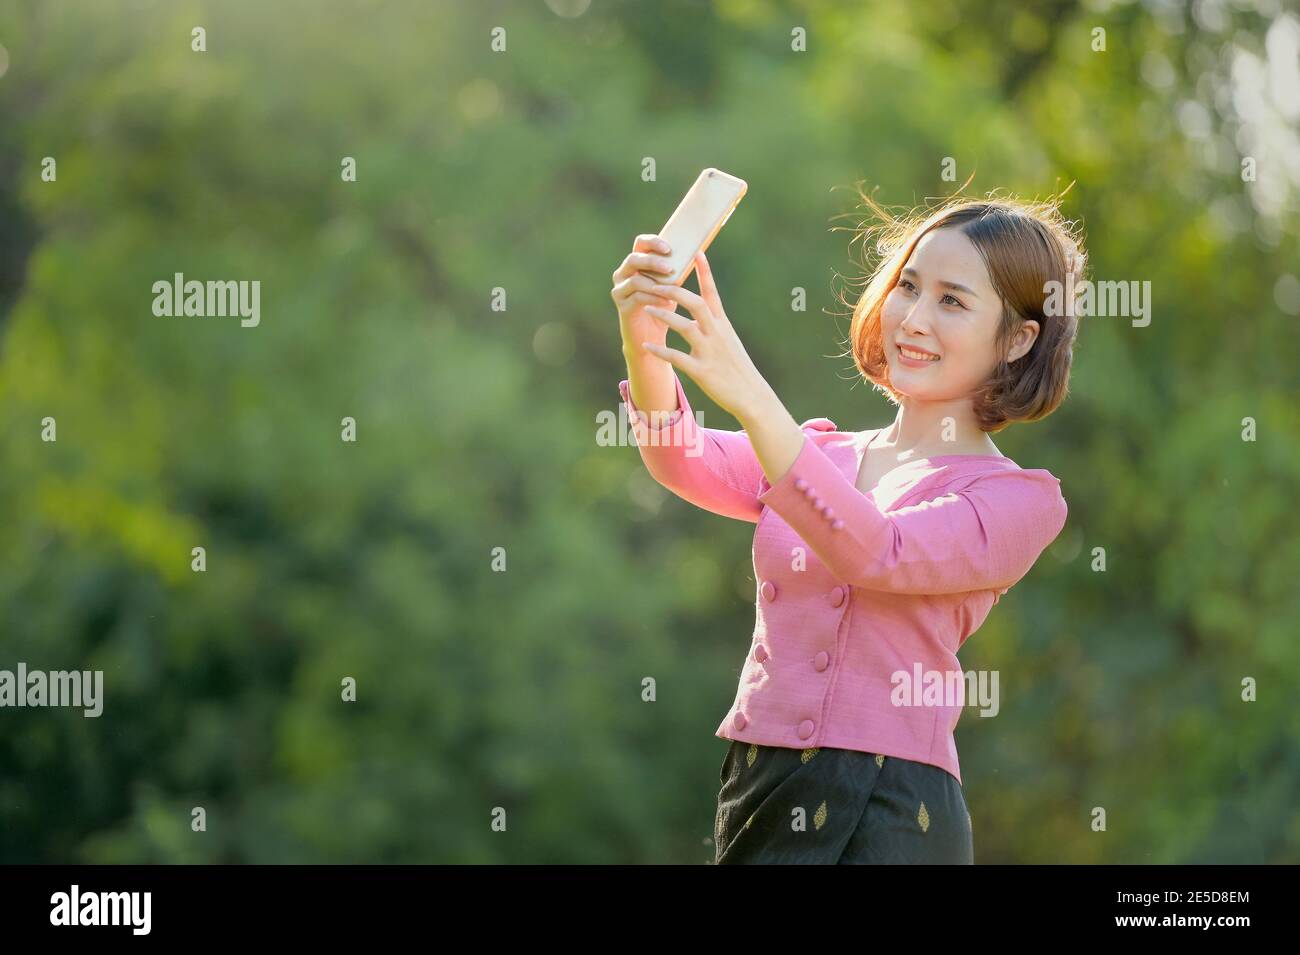 Lächelnde Frau, die in einem Garten steht und ein Selfie mit ihrem Handy macht, Thailand Stockfoto